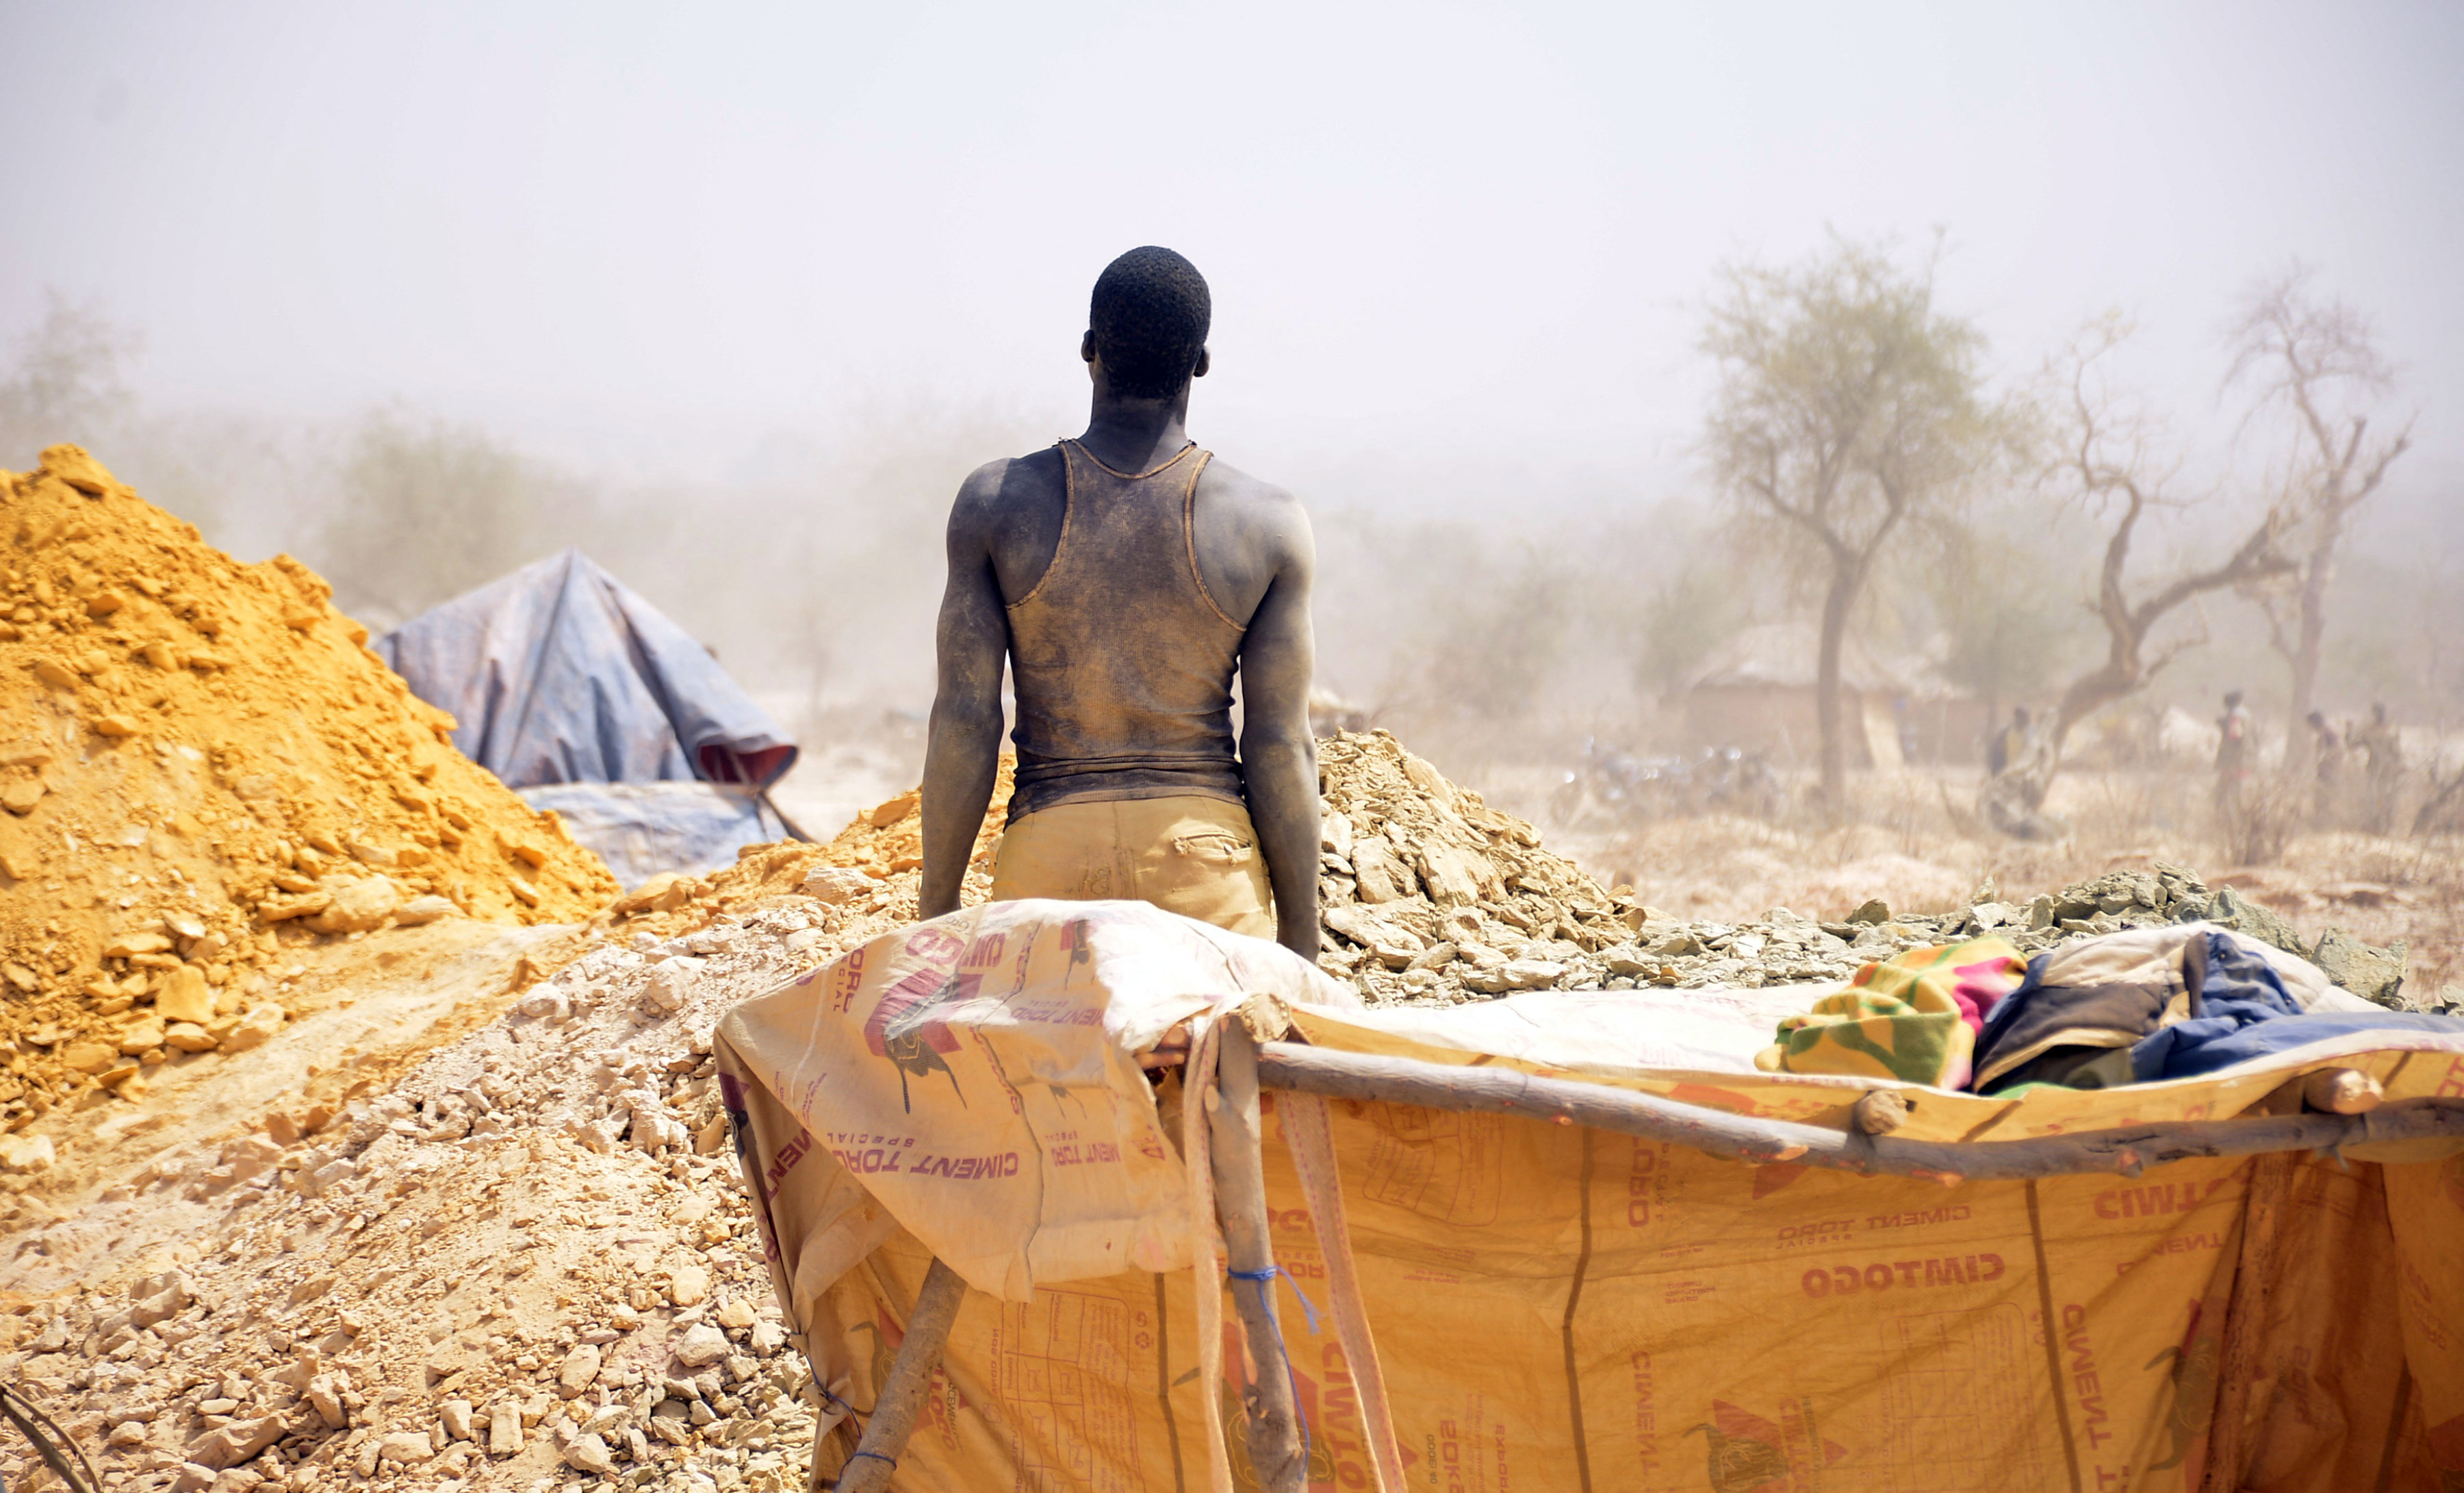 Robbanás volt egy aranybányánál Burkina Fasóban, 60-an meghaltak